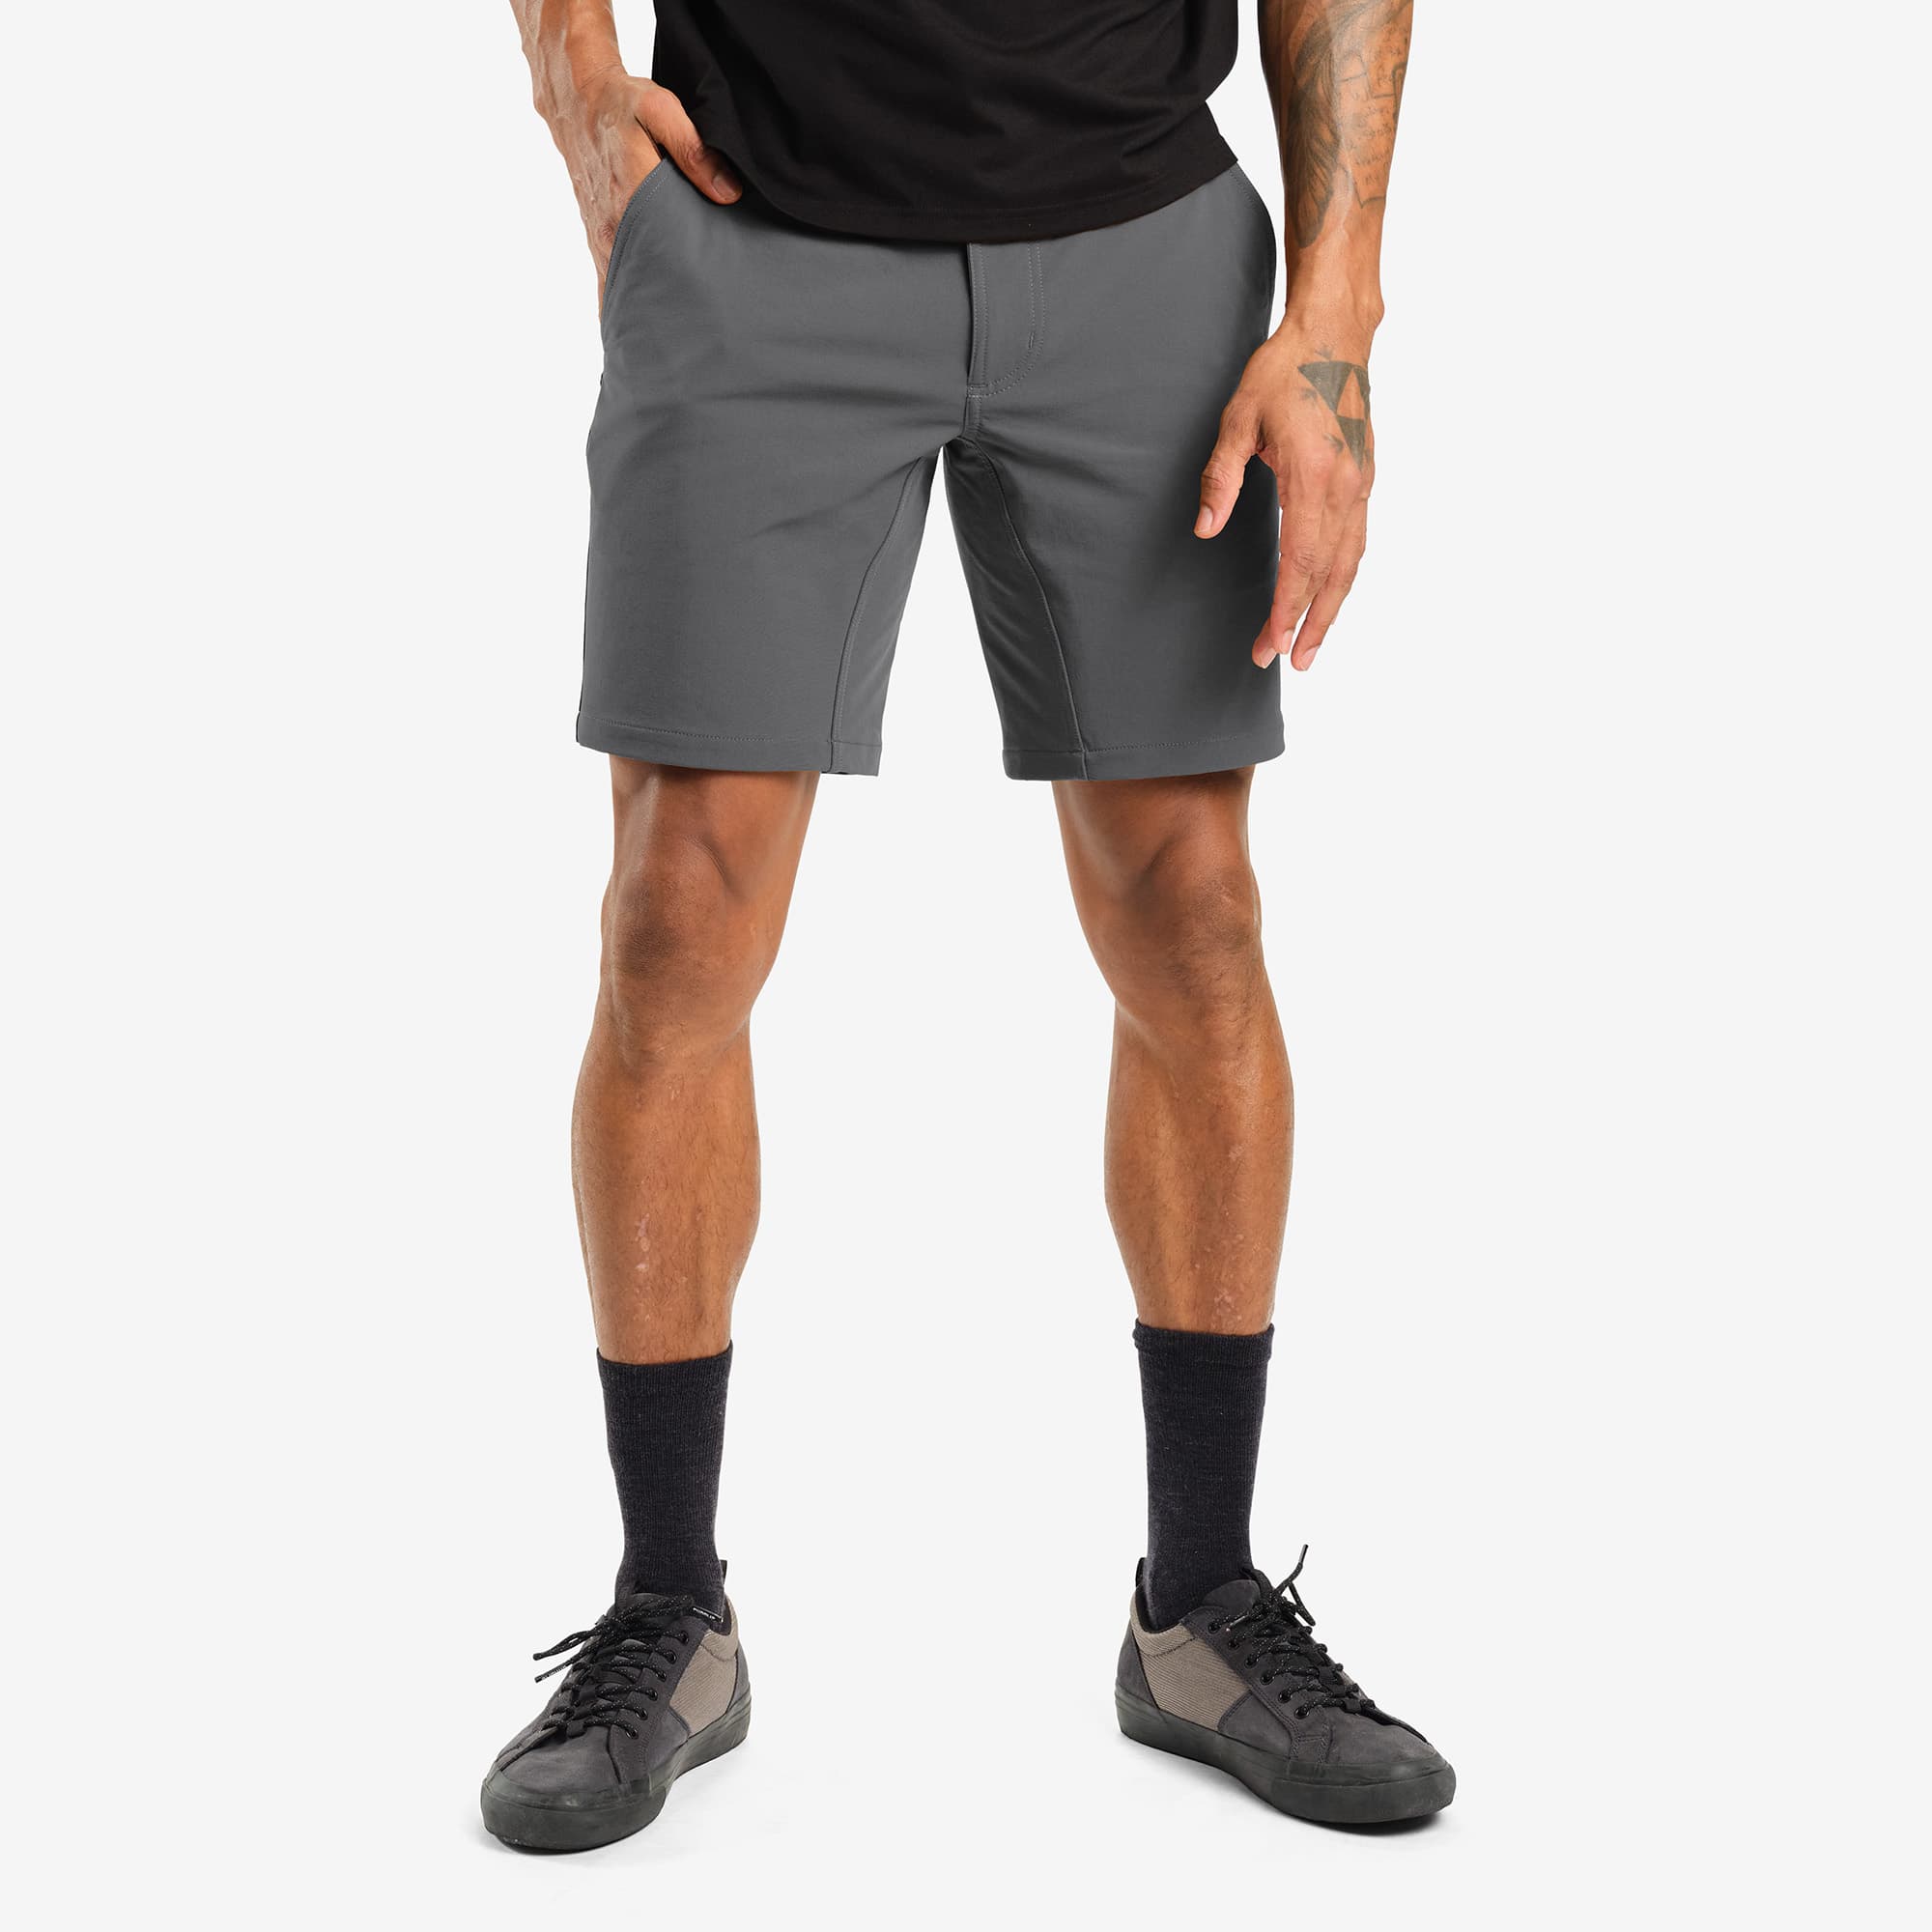 Men's tech Folsom Mid Short in grey worn by a man #color_castle rock